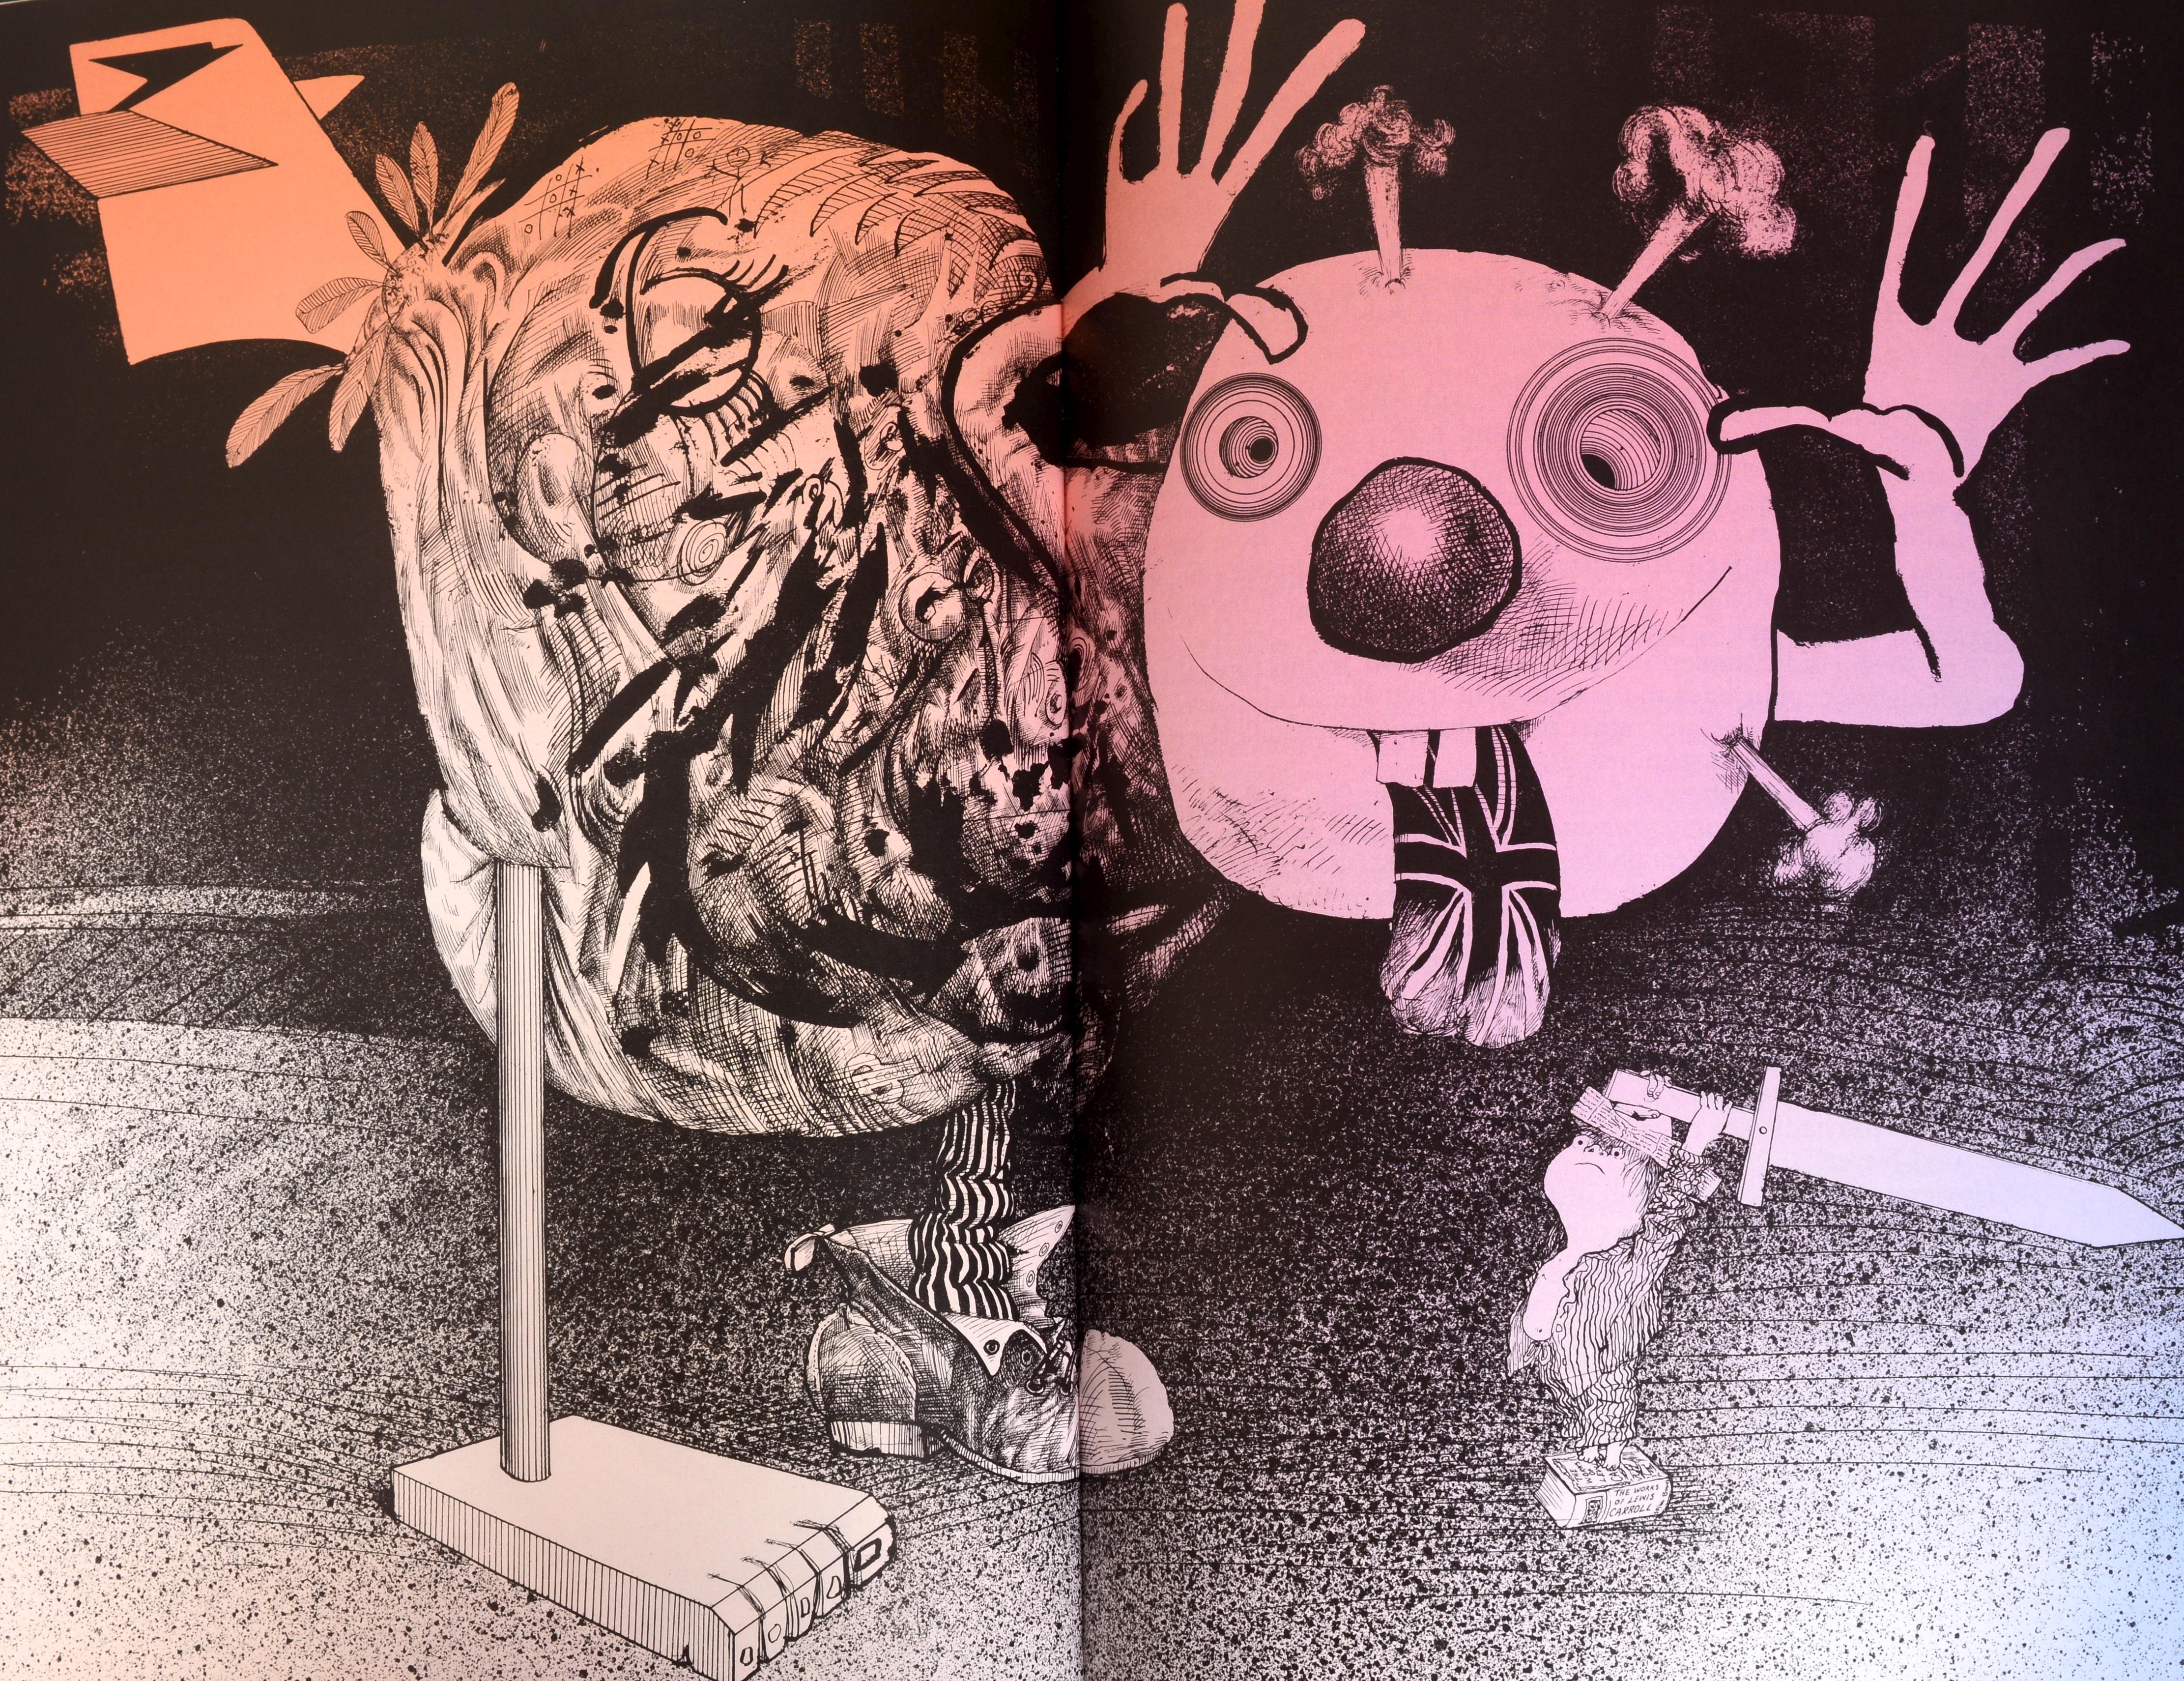 L'intégrale d'Alice et La chasse au Snark de Lewis Carroll. Publié par Salem House Publishing Topsfield, MA, 1987. Première édition, donc couverture rigide avec jaquette. Illustré en couleur et en monochrome tout au long de l'ouvrage. Dans la